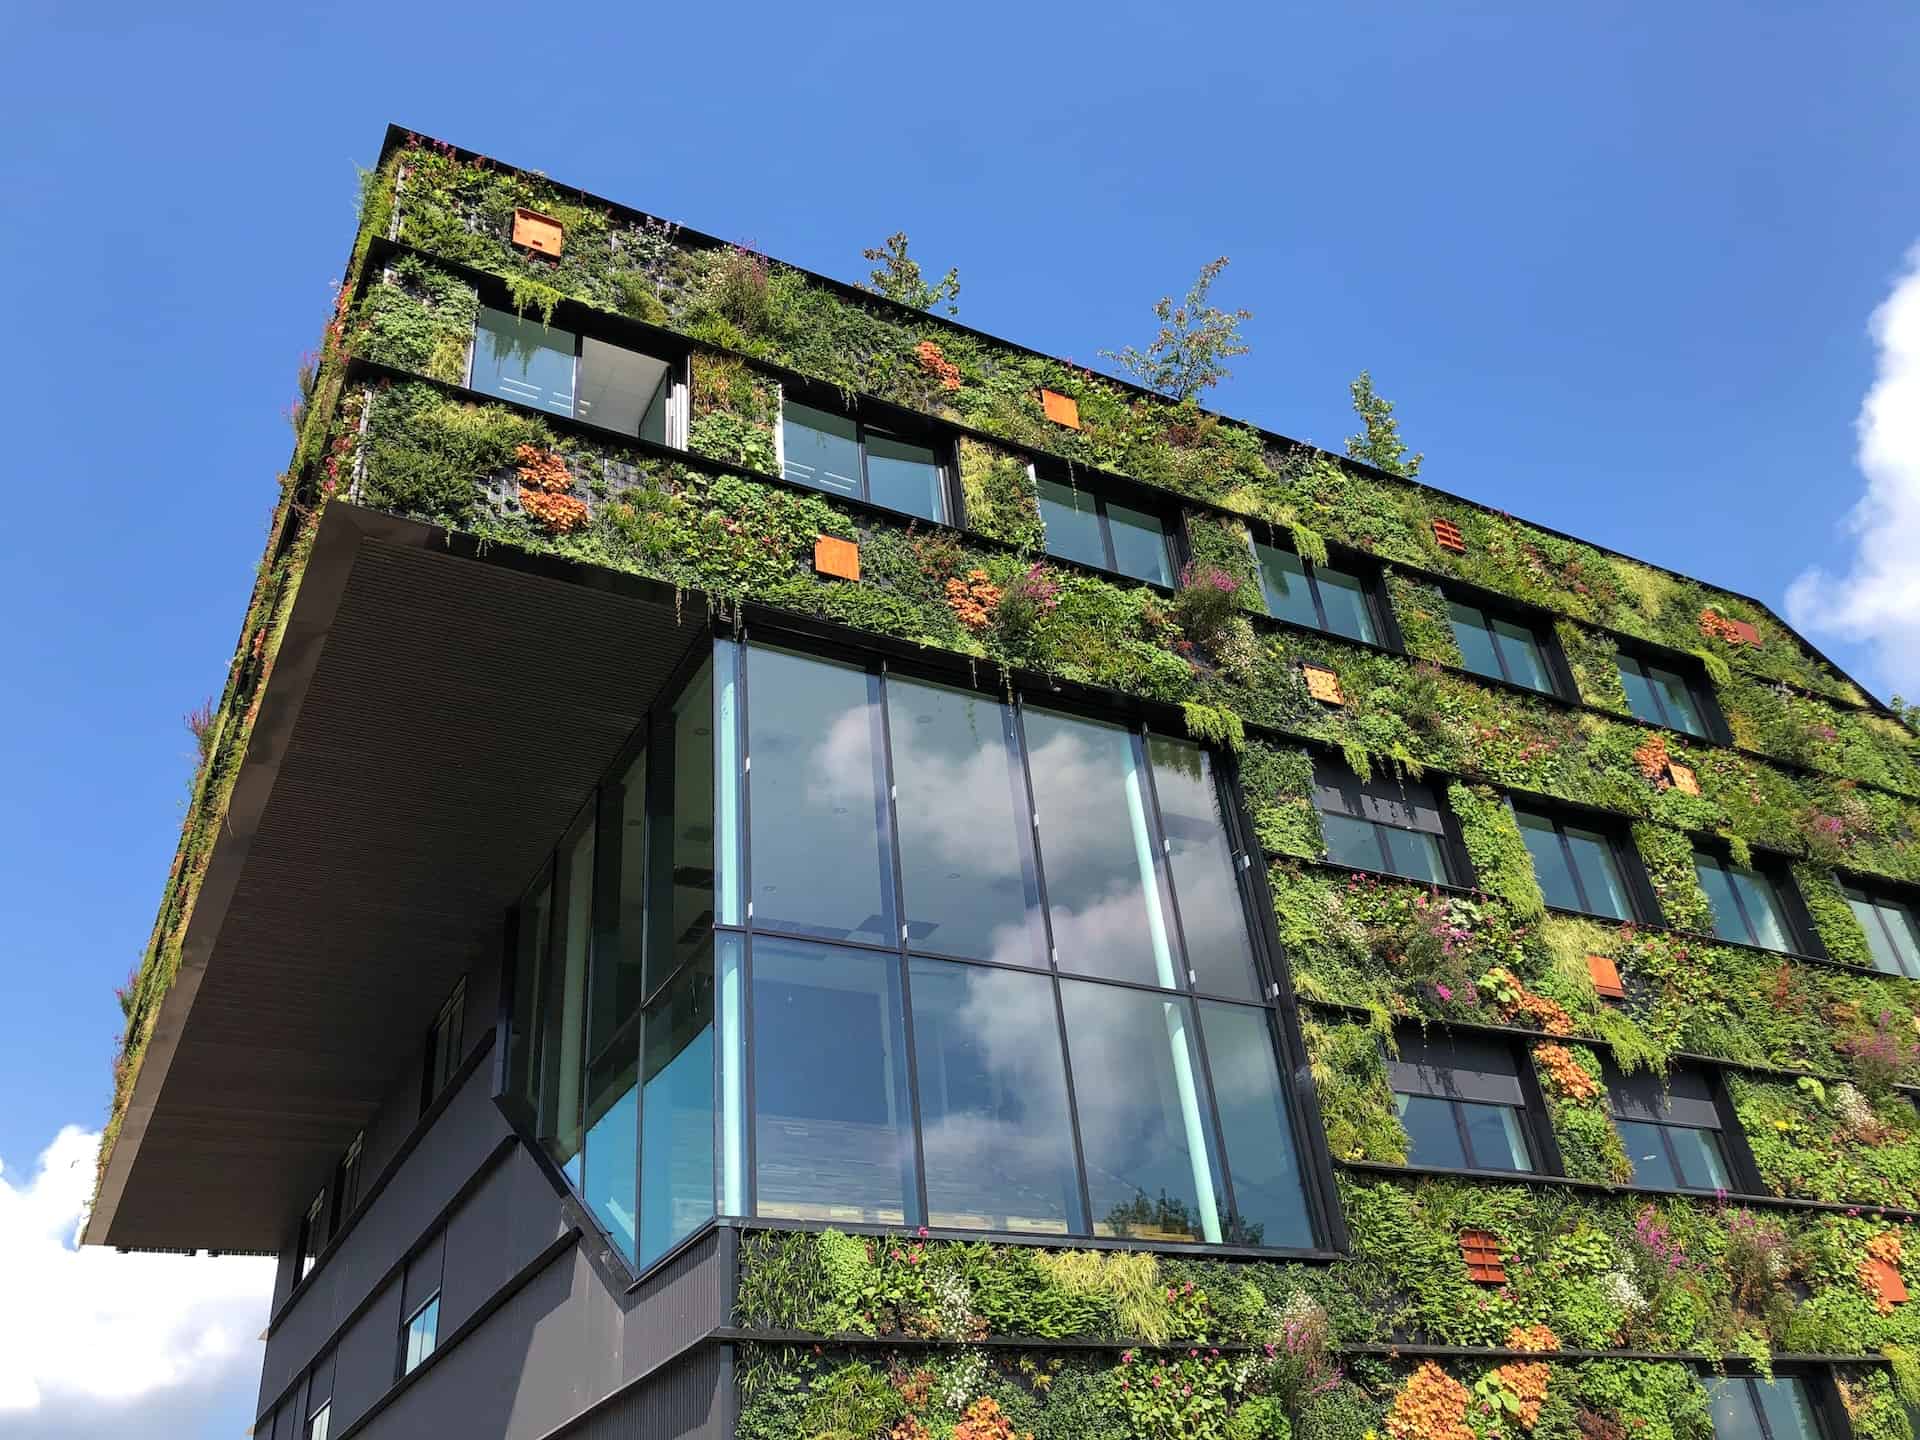 Entdecken Sie, wie moderne Gebäude durch nachhaltiges Bauen zum Klimaschutz beitragen können.